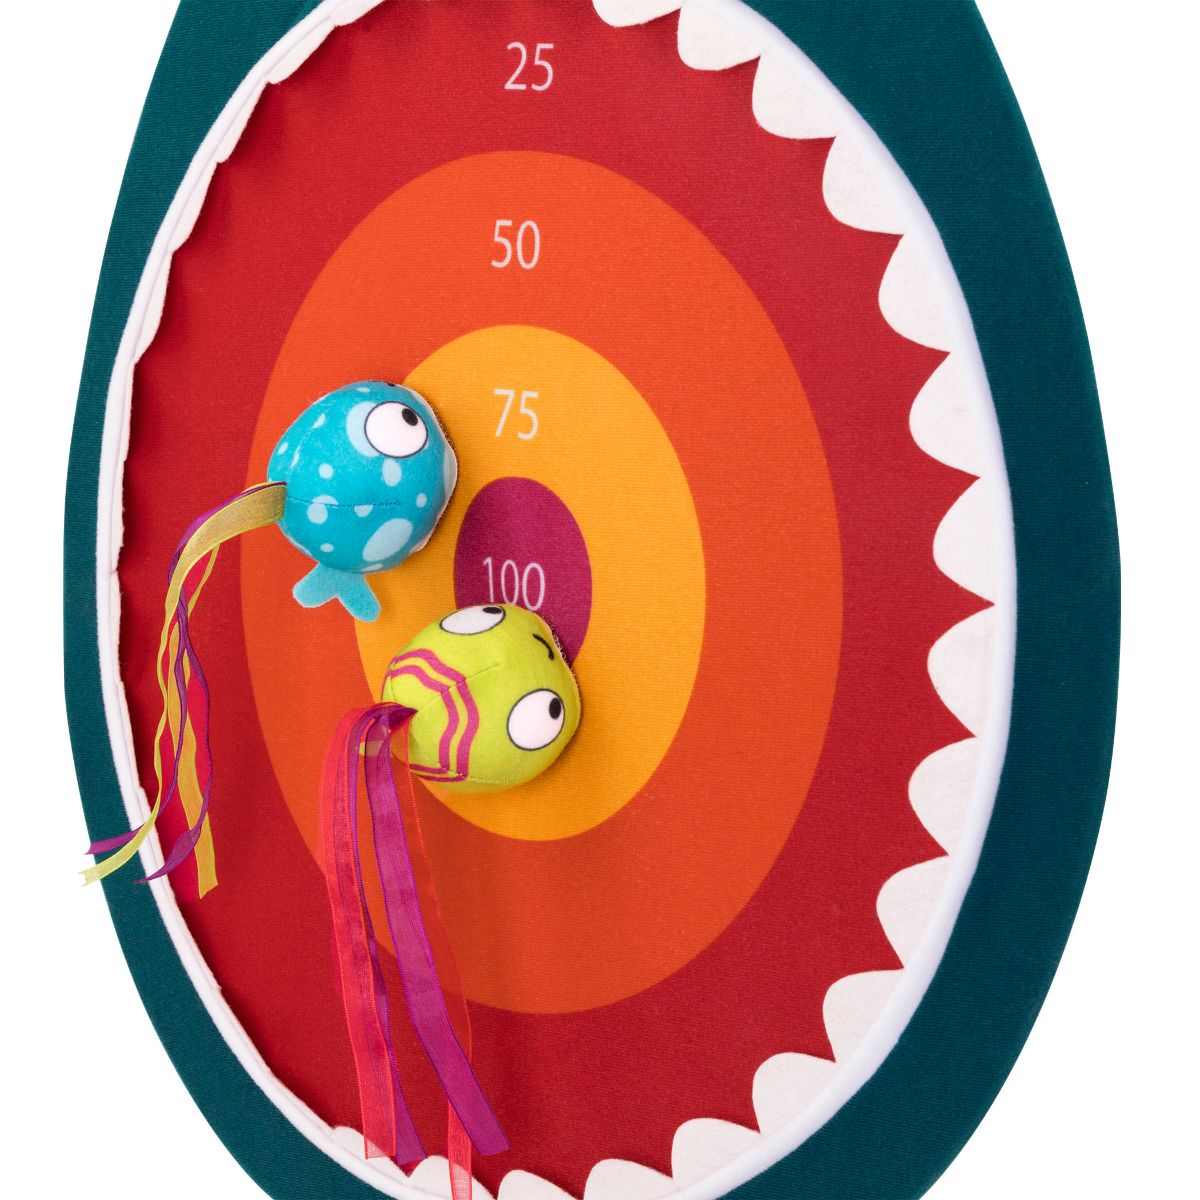 Ocean-themed Velcro dart board